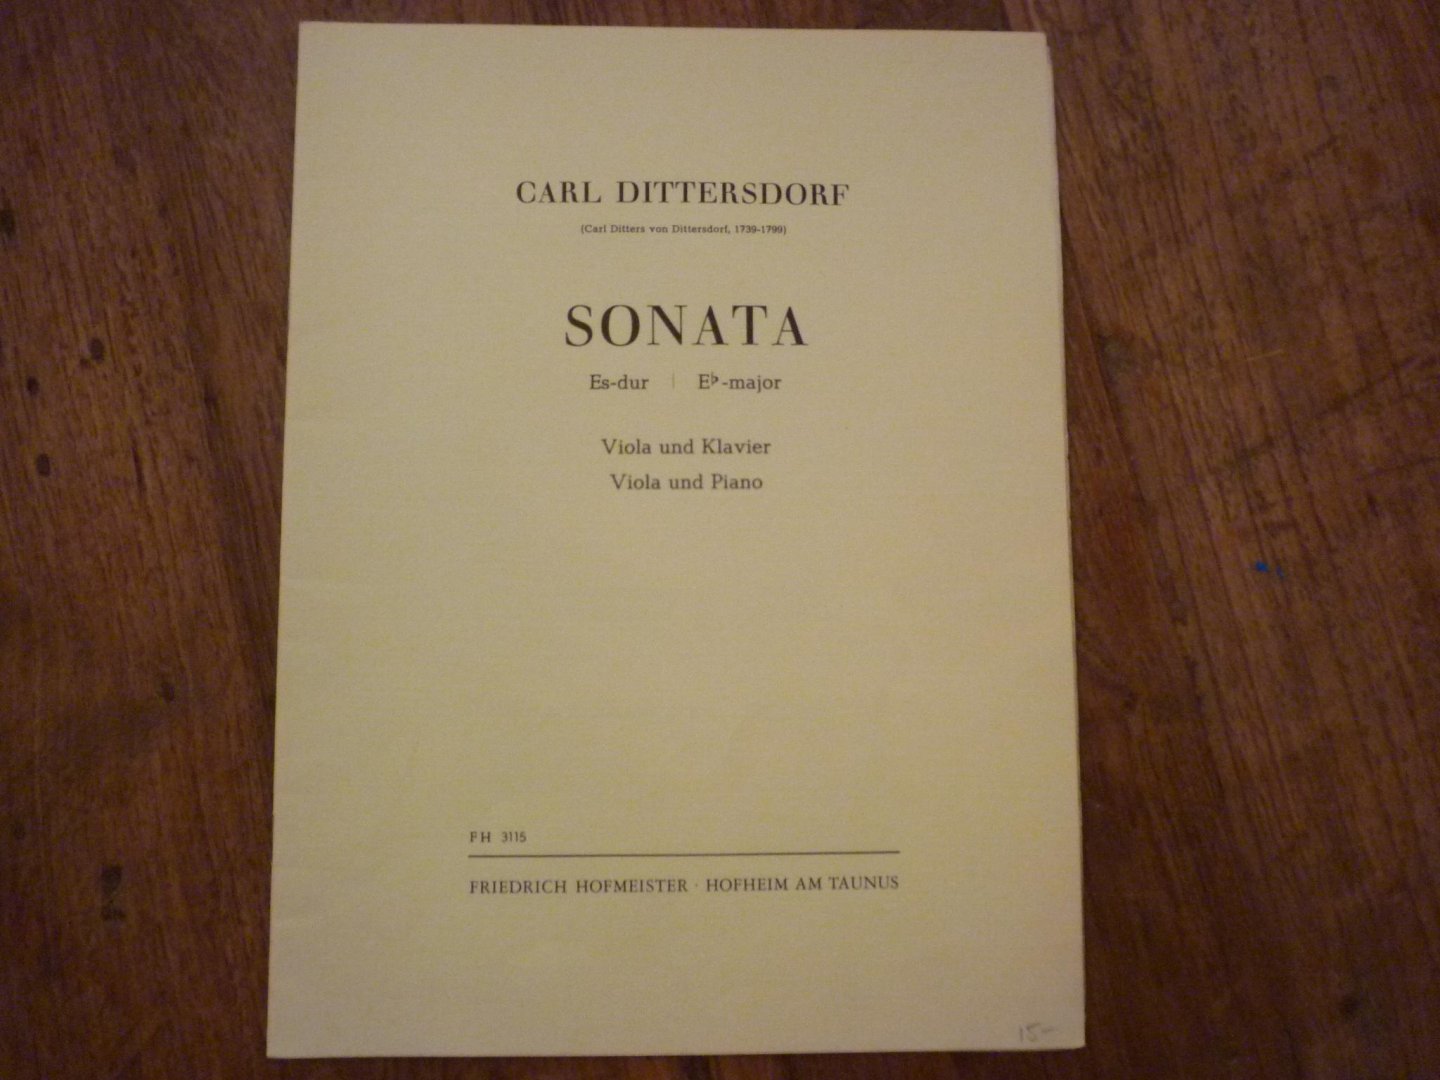 Dittersdorf; Carl Ditters von (1739–1799) - Sonate Es-Dur voor Altviool en piano (herausgegeben von H. Mlynarczyk - L. Lurmann)